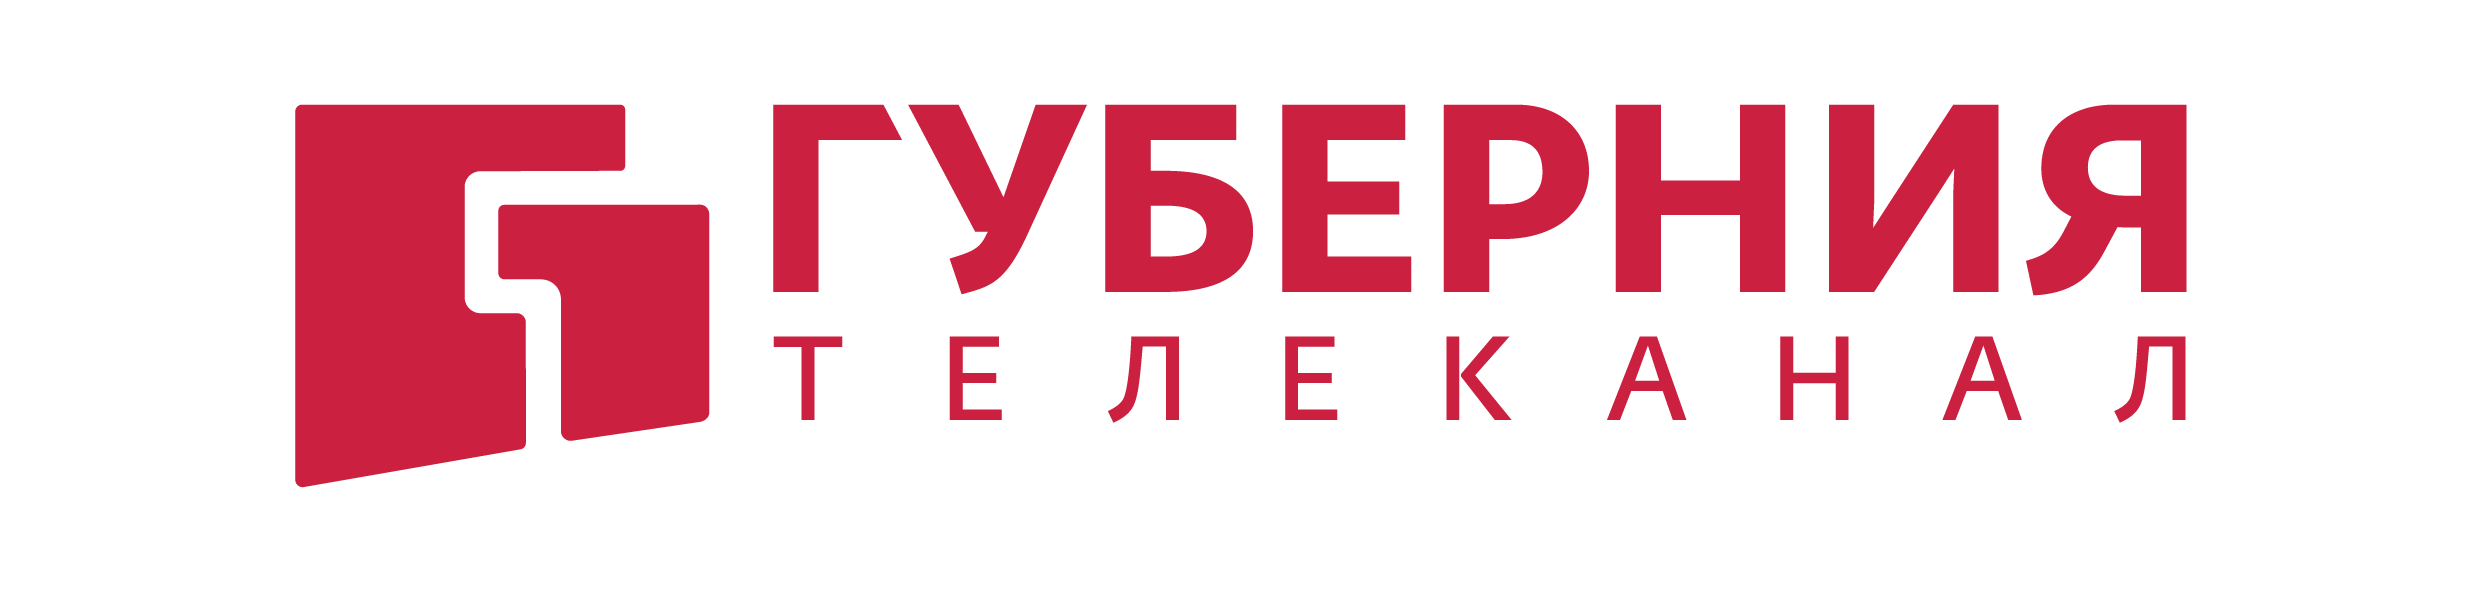 Губерния Хабаровск логотип. Телеканал Губерния. Телеканал Губерния логотип. Губерния ТВ Хабаровск.